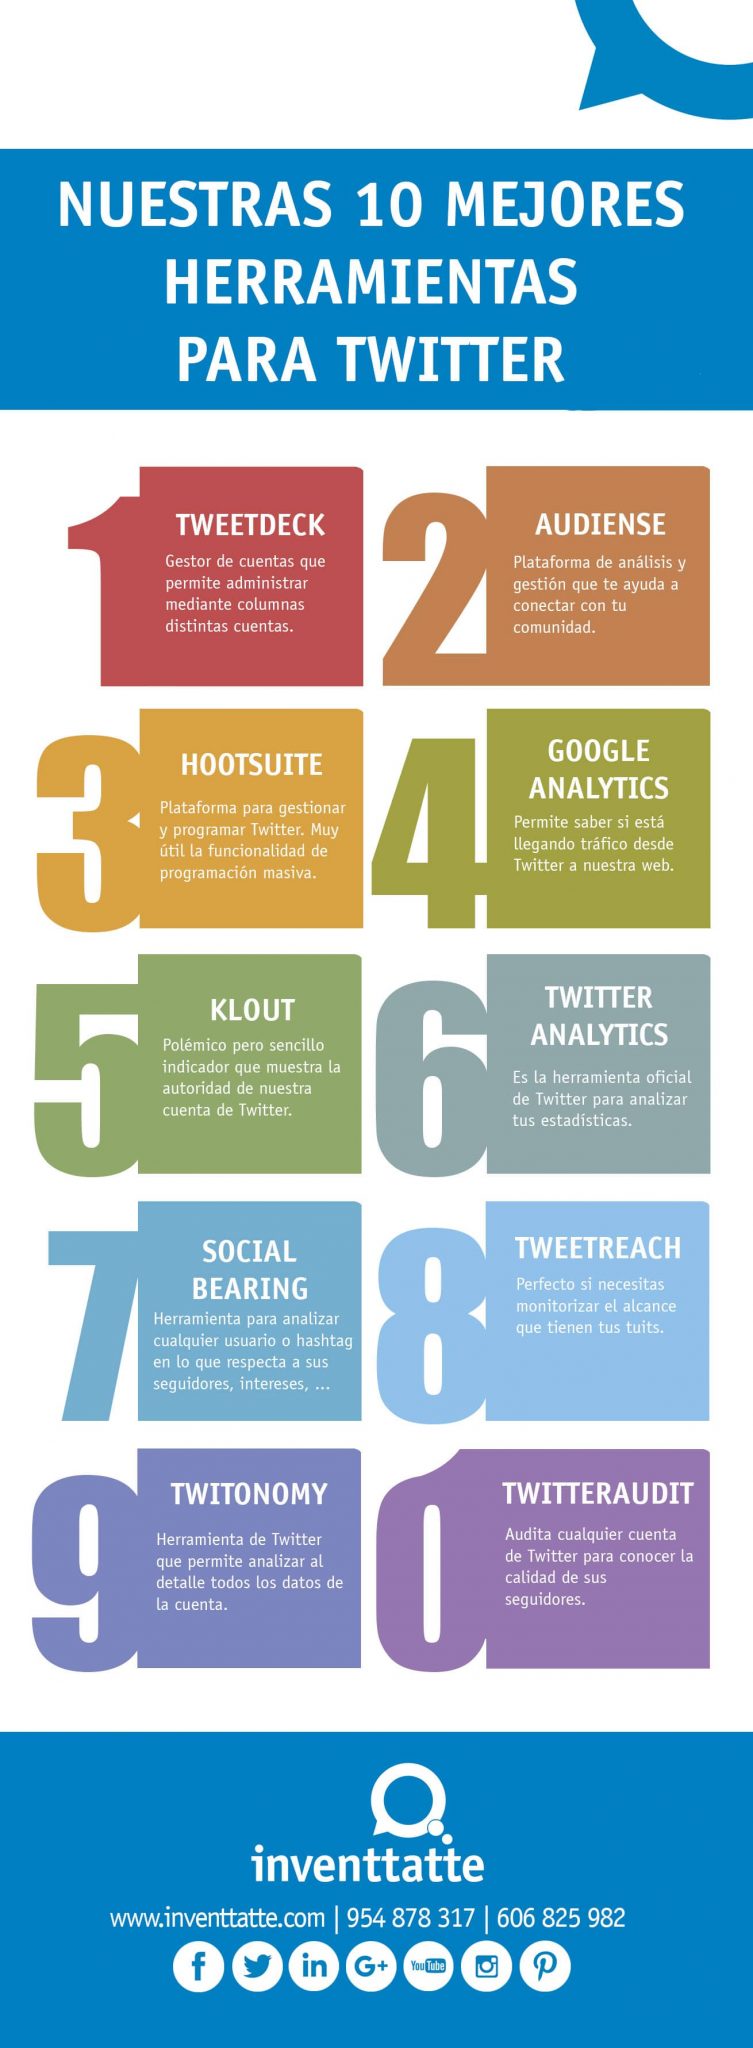 Infografía-nuestras-10-mejores-herramientas-para-twitter